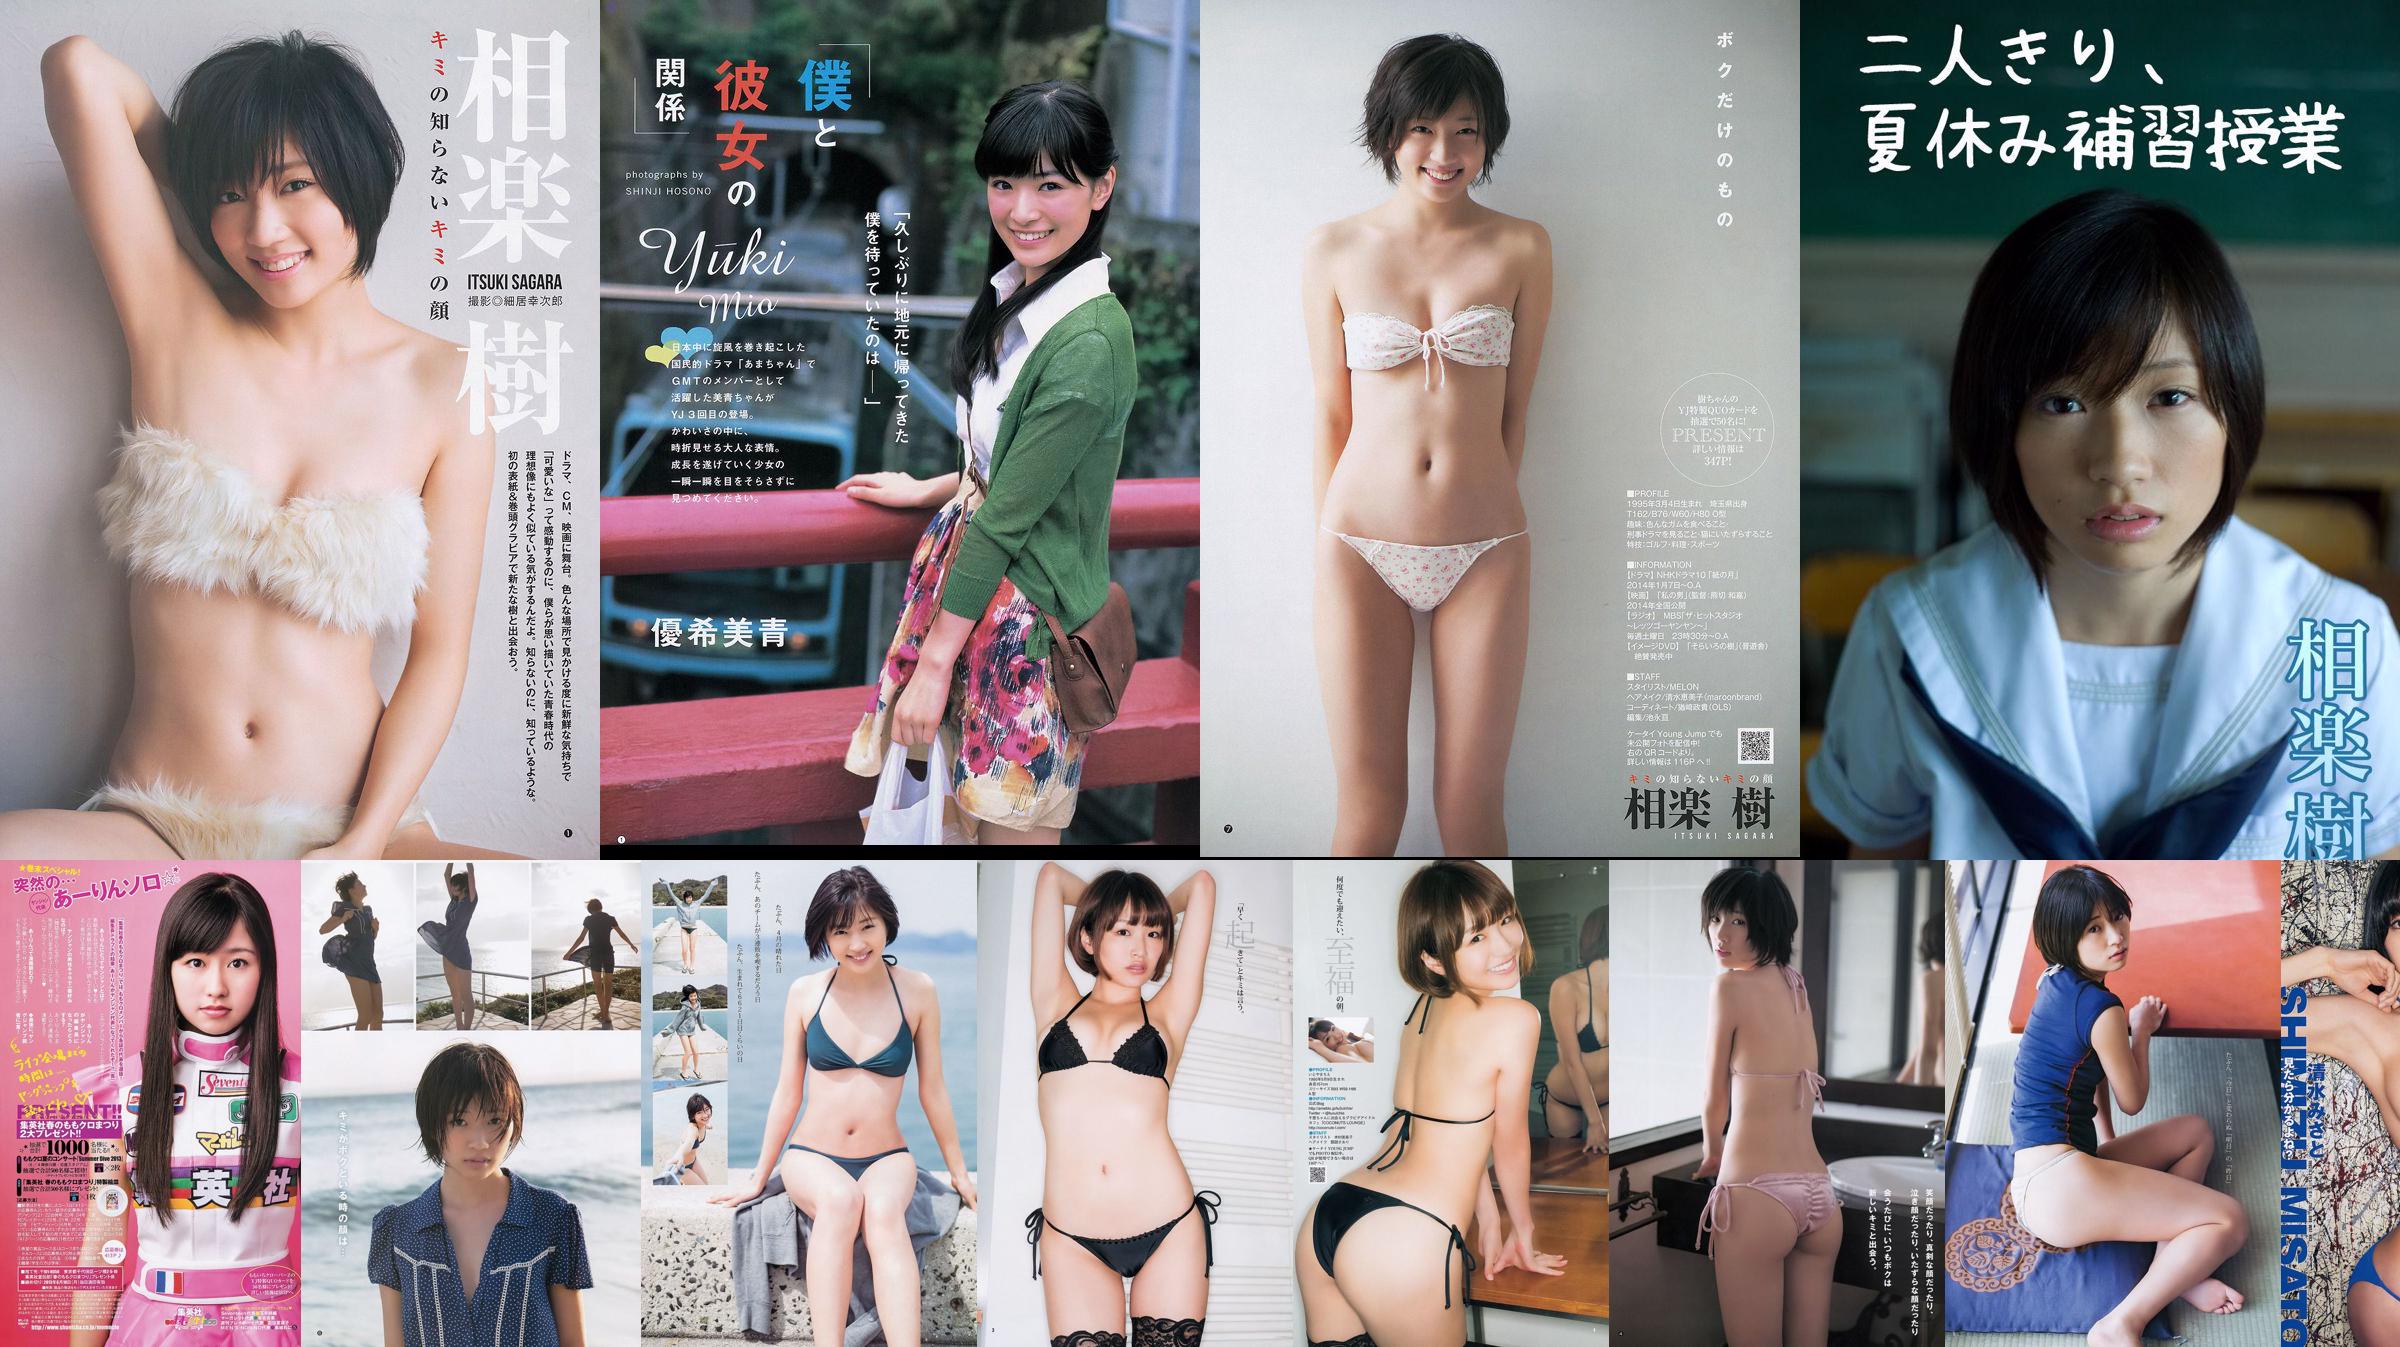 Itsuki Sagara Chie Itoyama Yuki Mio [Weekly Young Jump] 2013 No.50 Photograph No.7cc4b9 Page 1